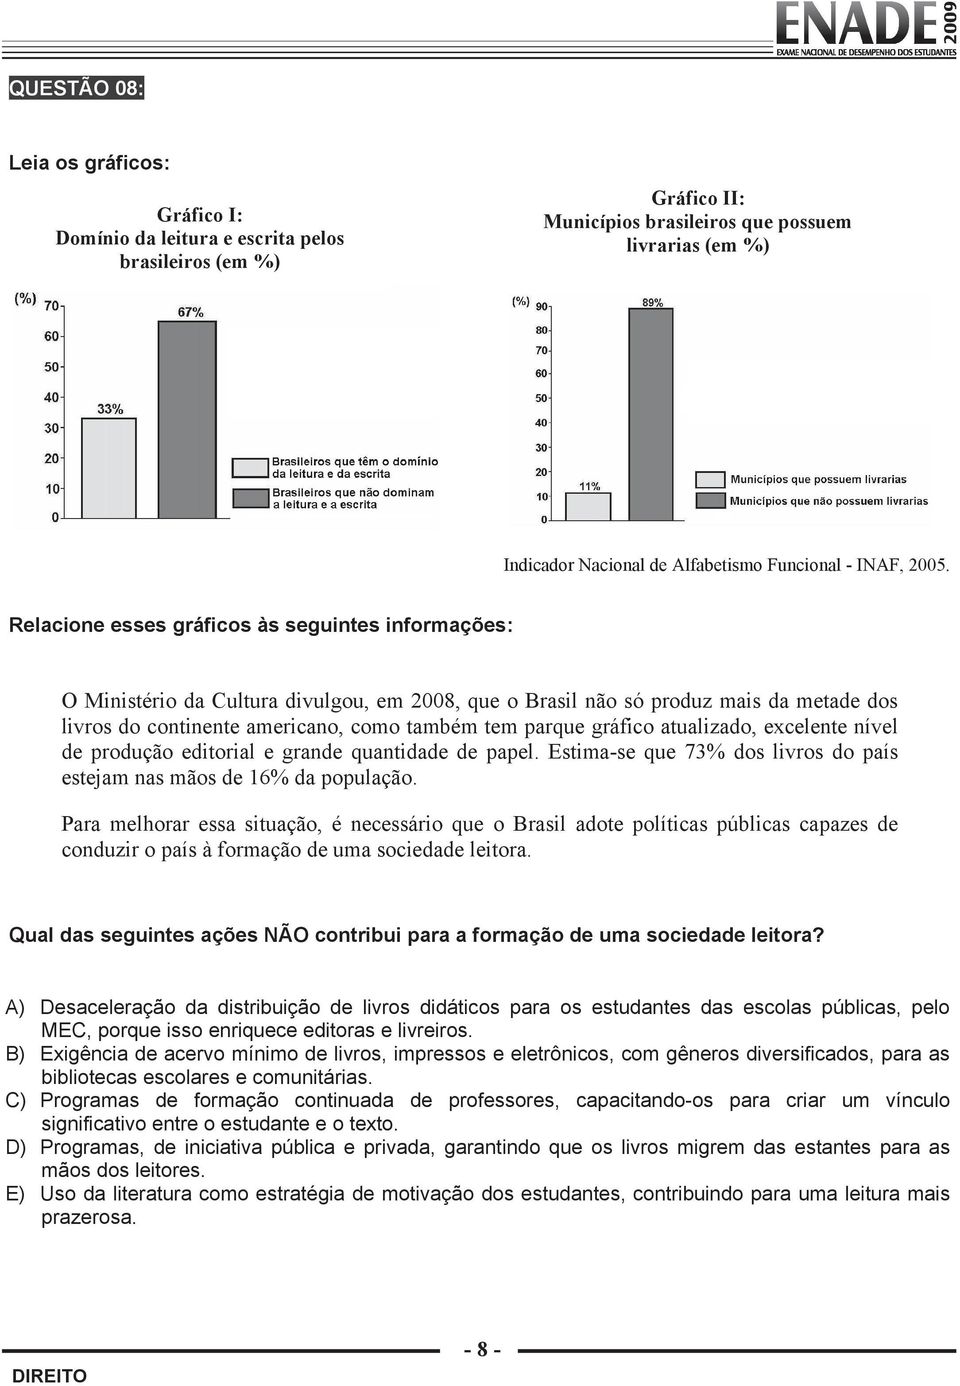 Relacione esses gráficos às seguintes informações: O Ministério da Cultura divulgou, em 2008, que o Brasil não só produz mais da metade dos livros do continente americano, como também tem parque